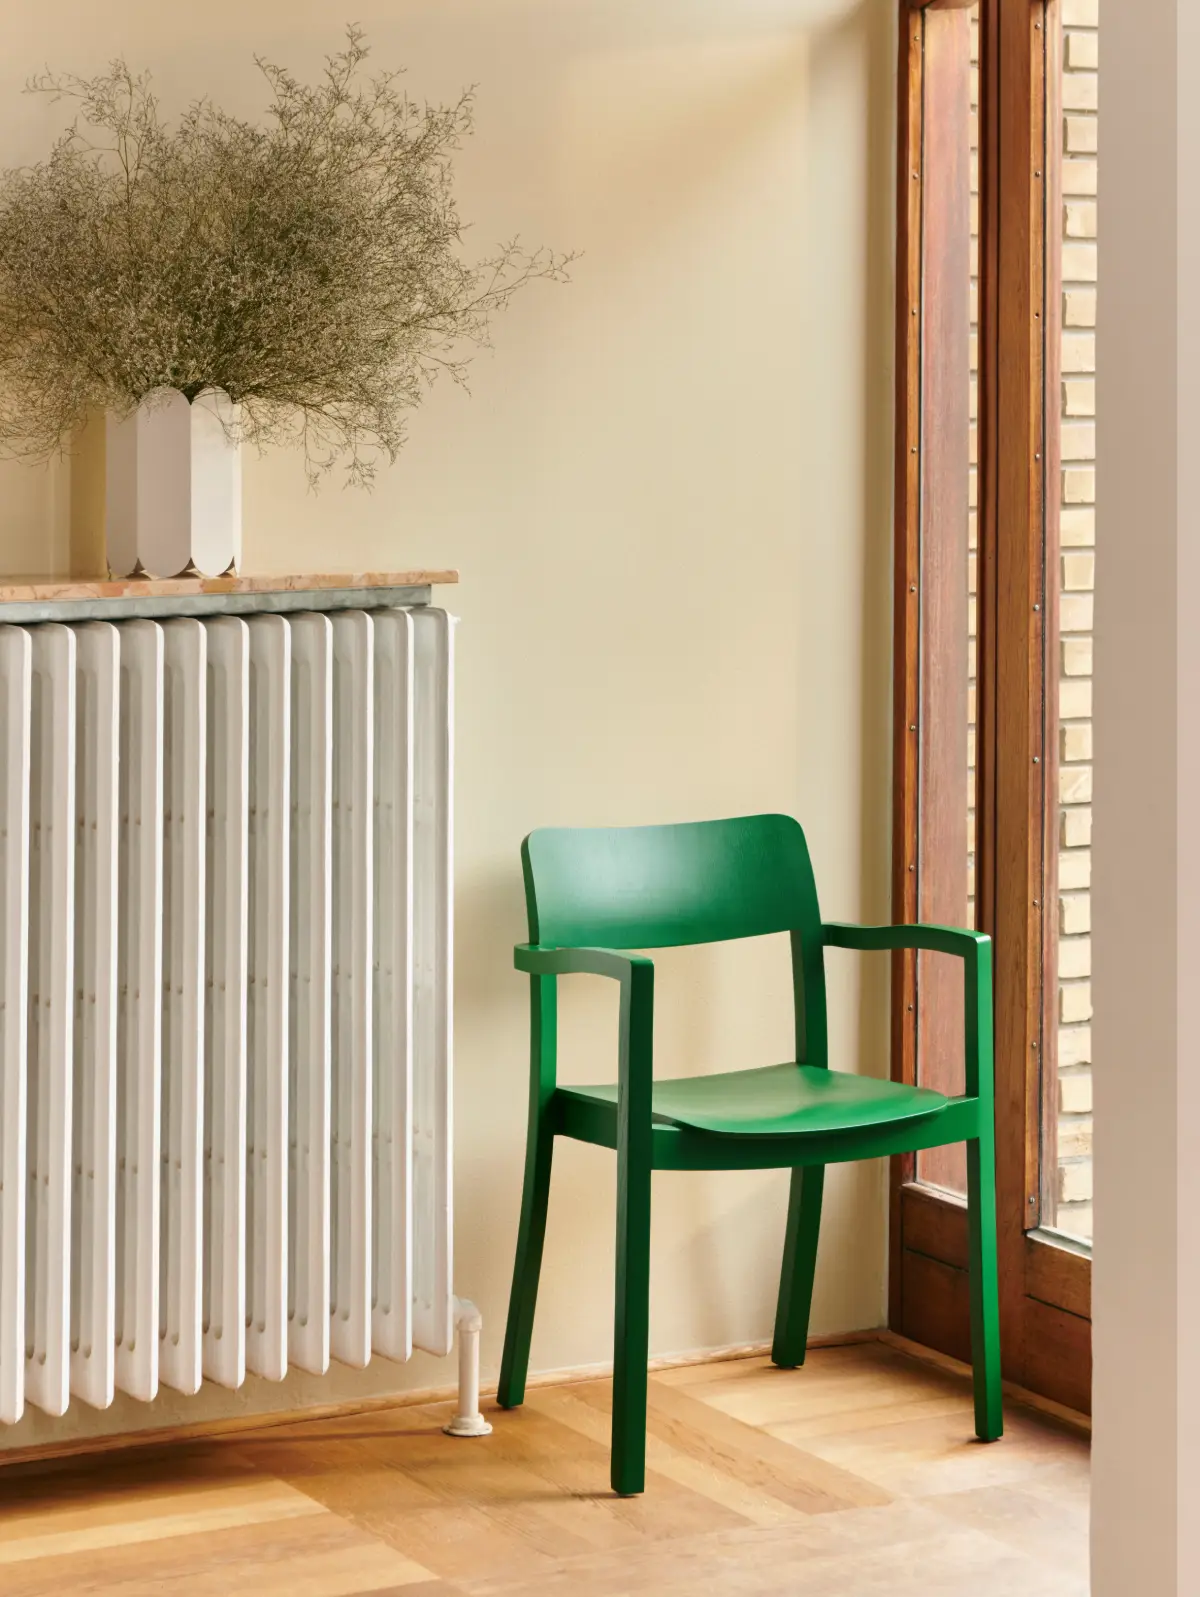 Tablette effet marbre posée sur le radiateur avec un vase blanc dessus et une chaise verte à côté